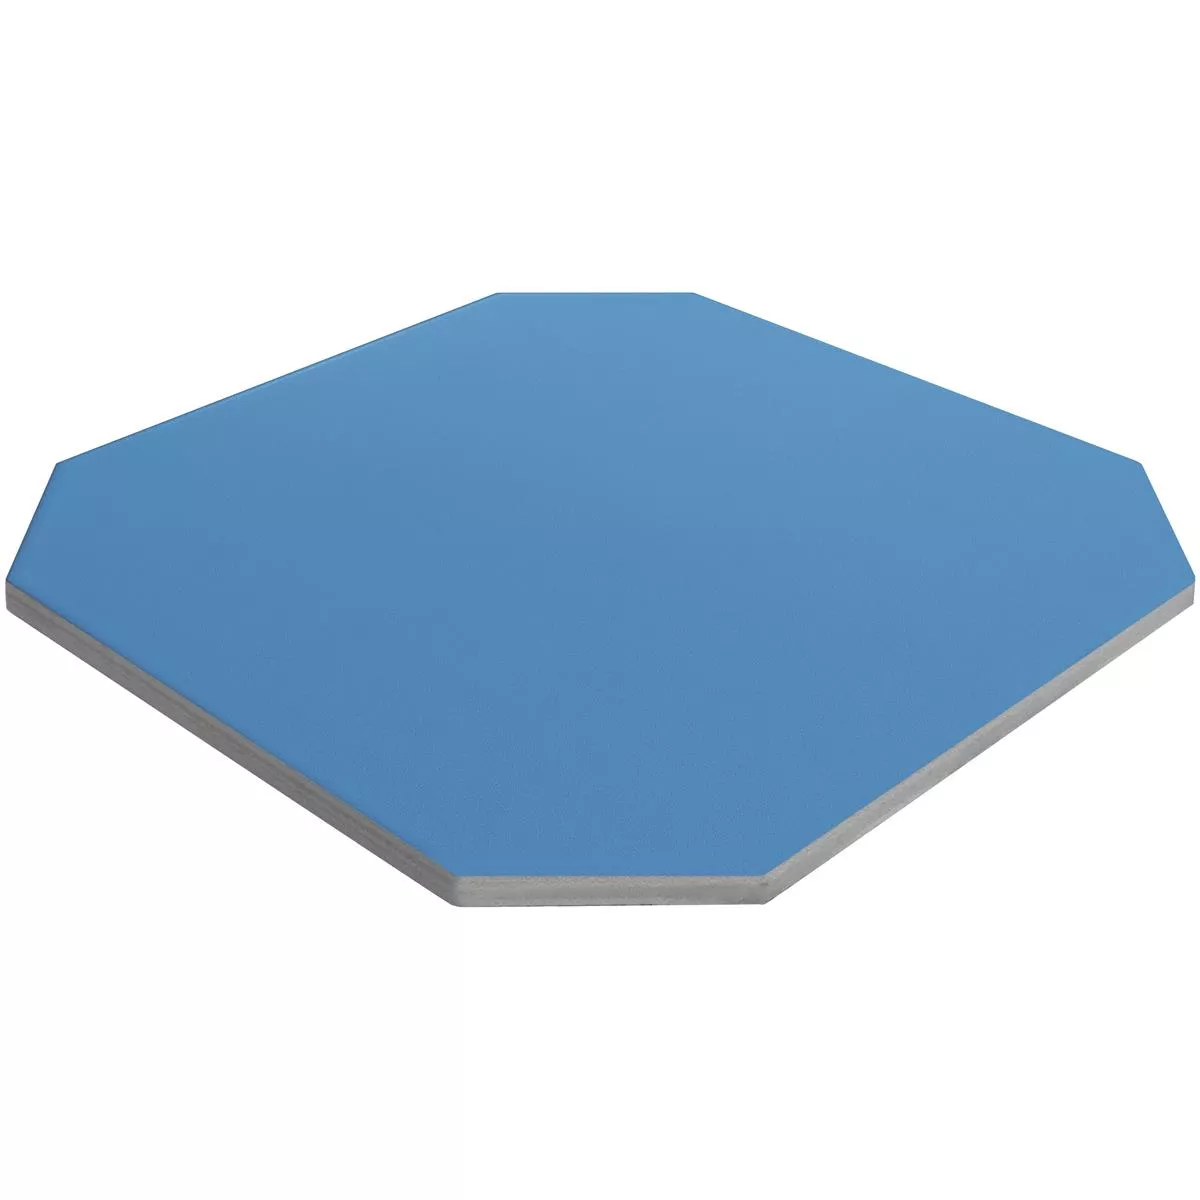 Porcelain Stoneware Tiles Genexia Uni Blue Octagon 20x20cm